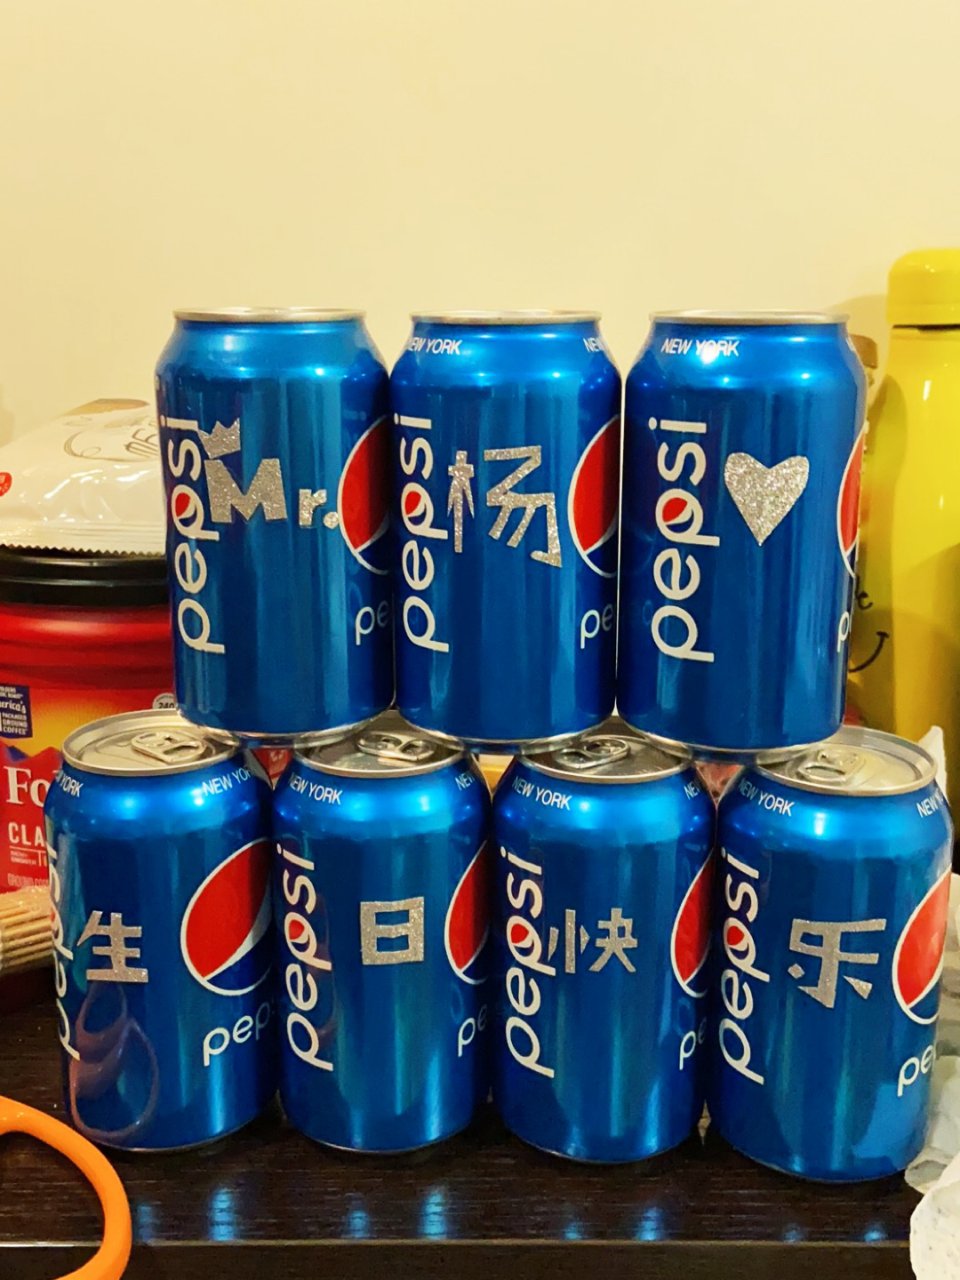 Pepsi 百事